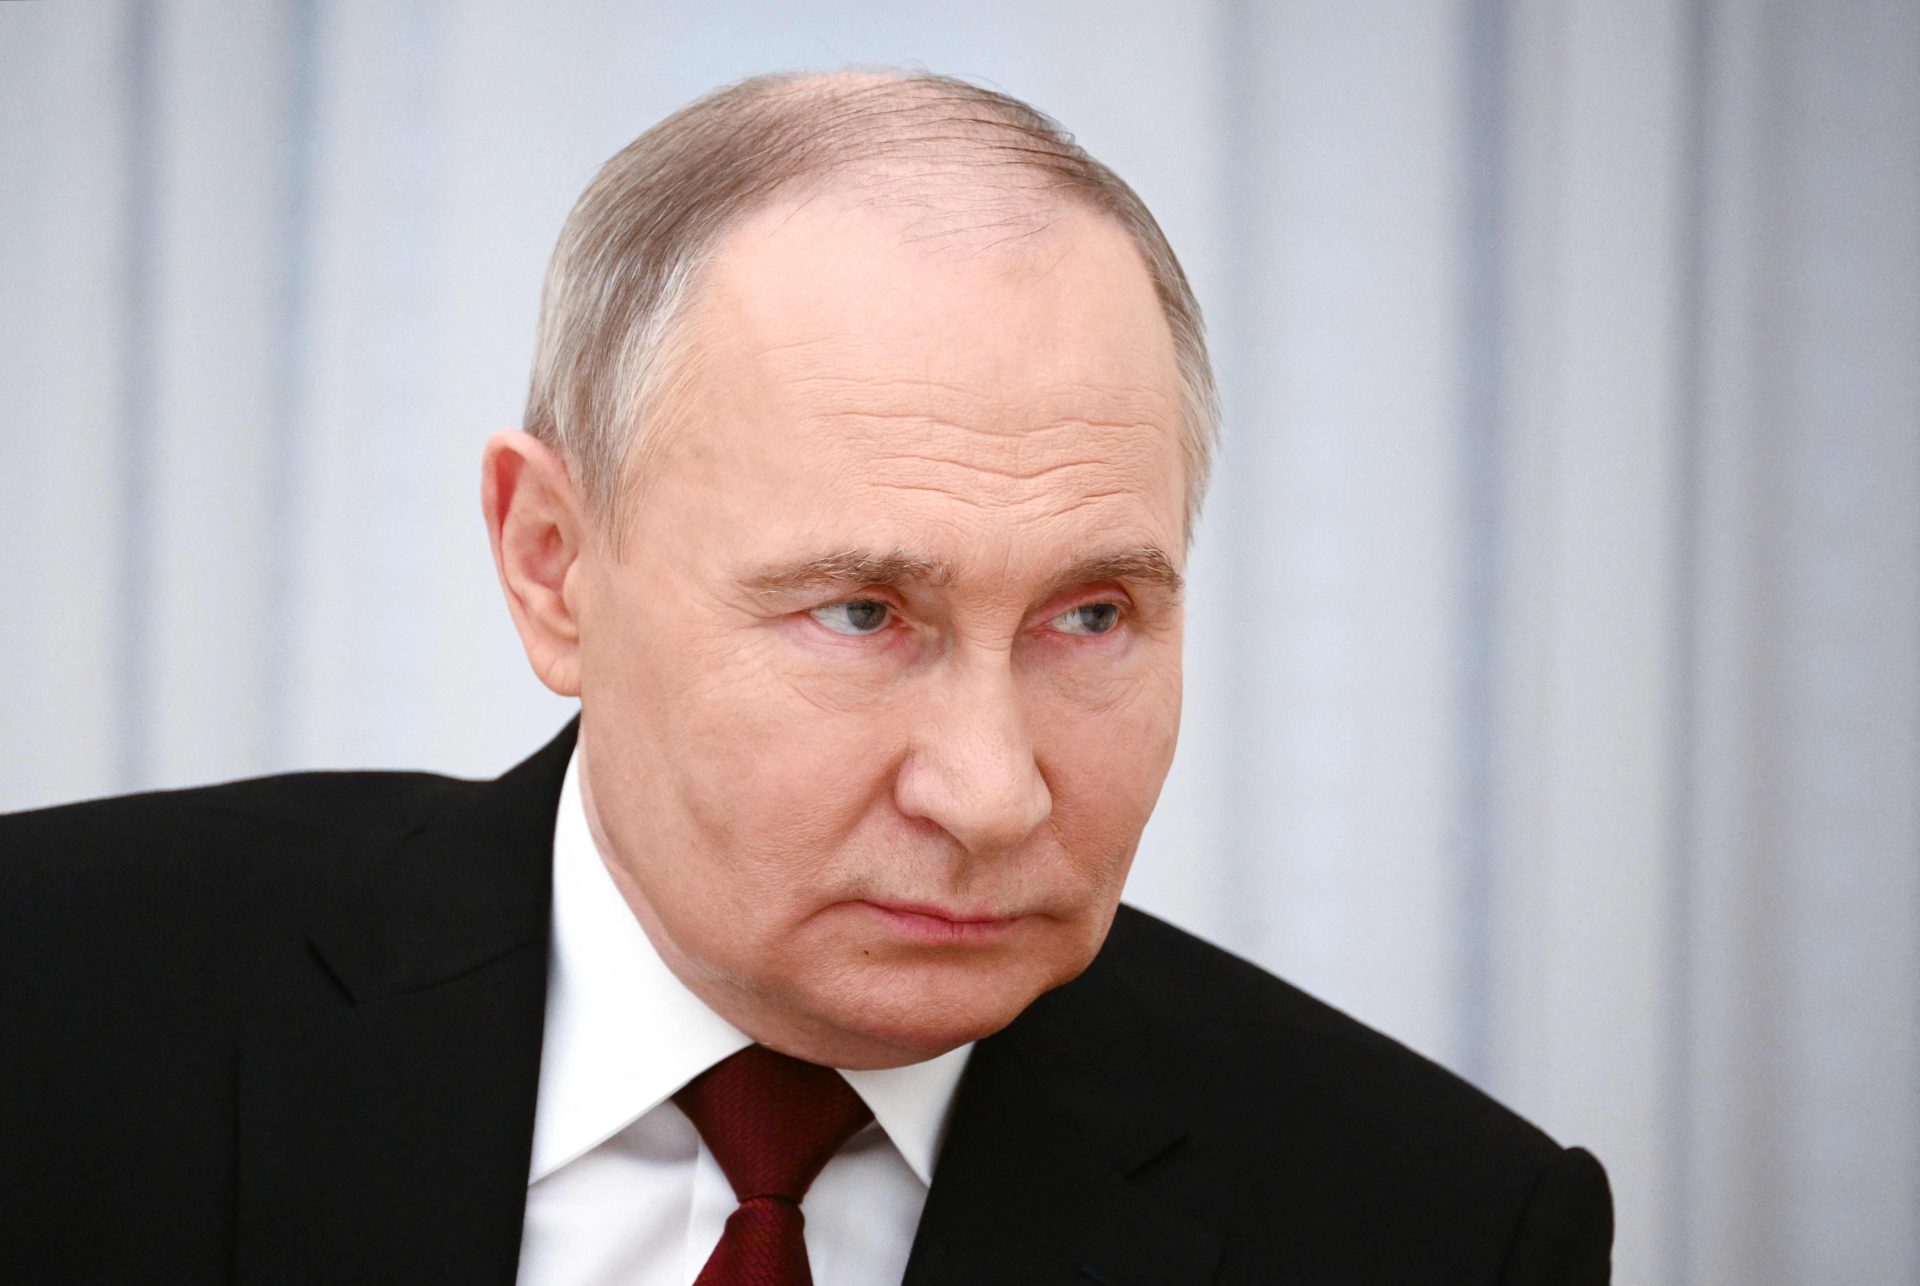 EUA punem empresas russas por evasão a sanções a amigo de Putin